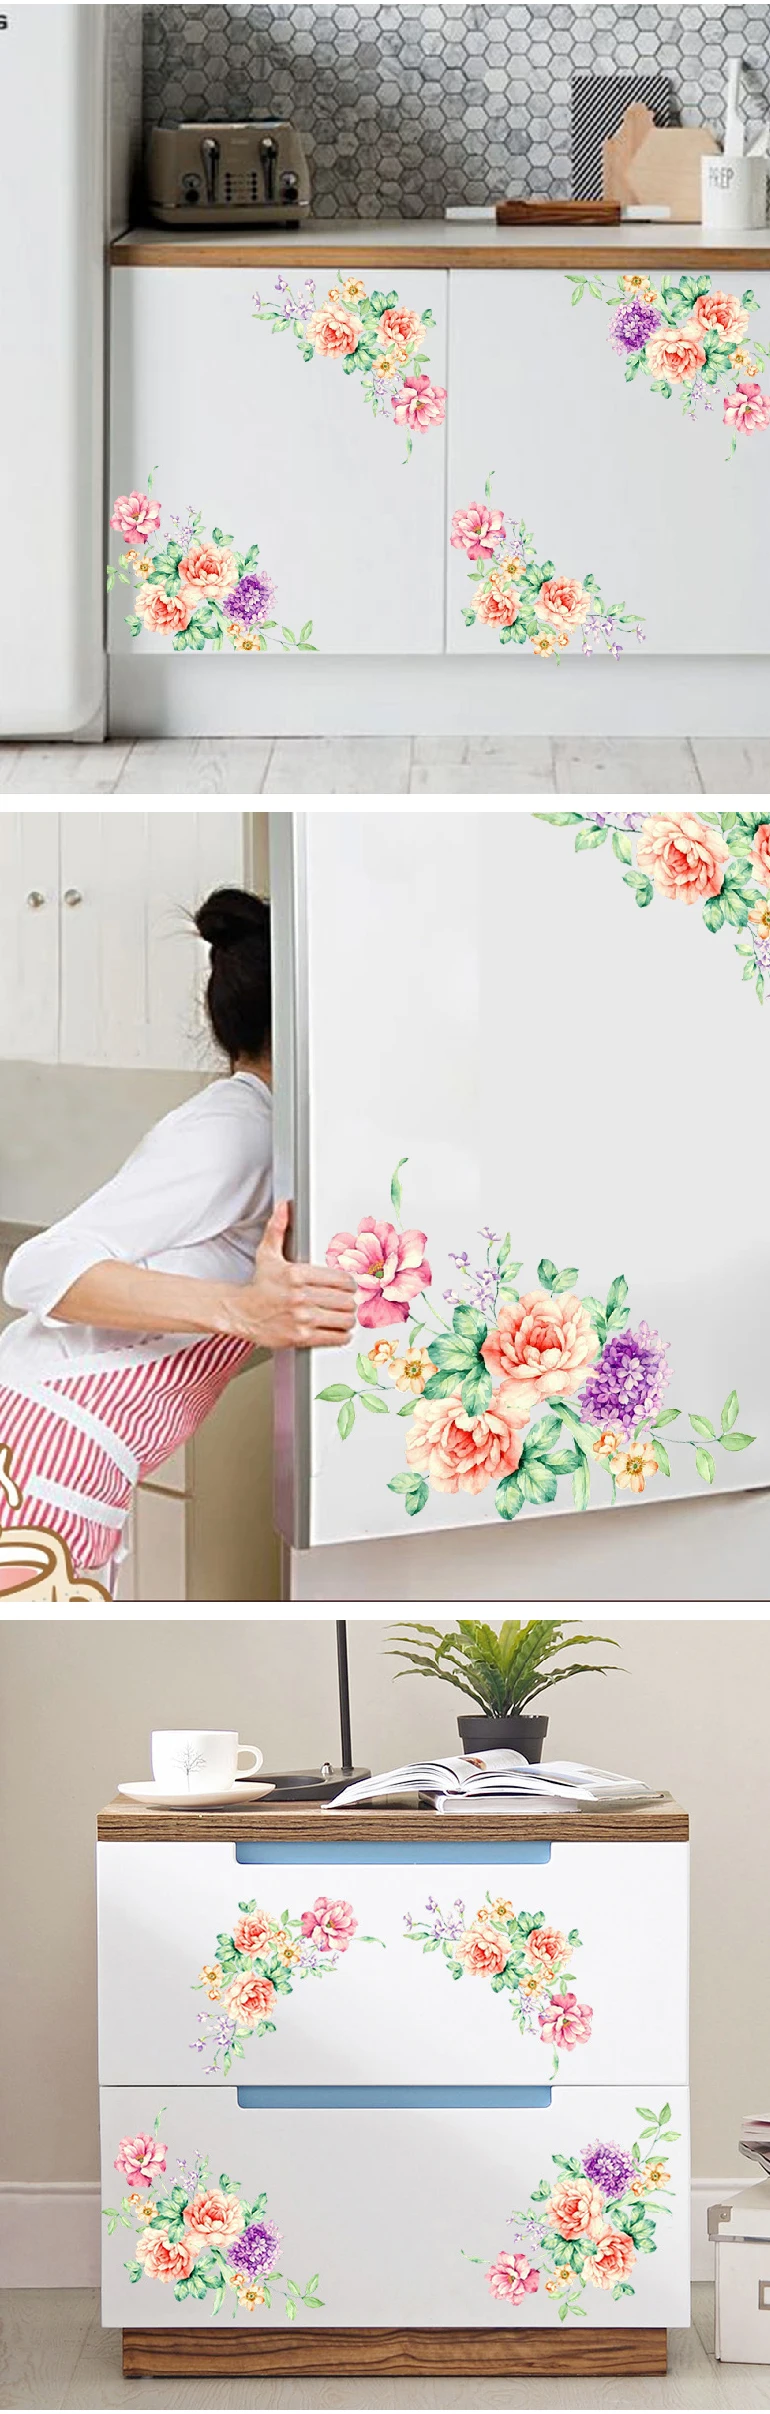 Цветы пиона настенные художественные наклейки Home Decor обои съемный настенные наклейки Дети Гостиная для туалета, холодильника украшения